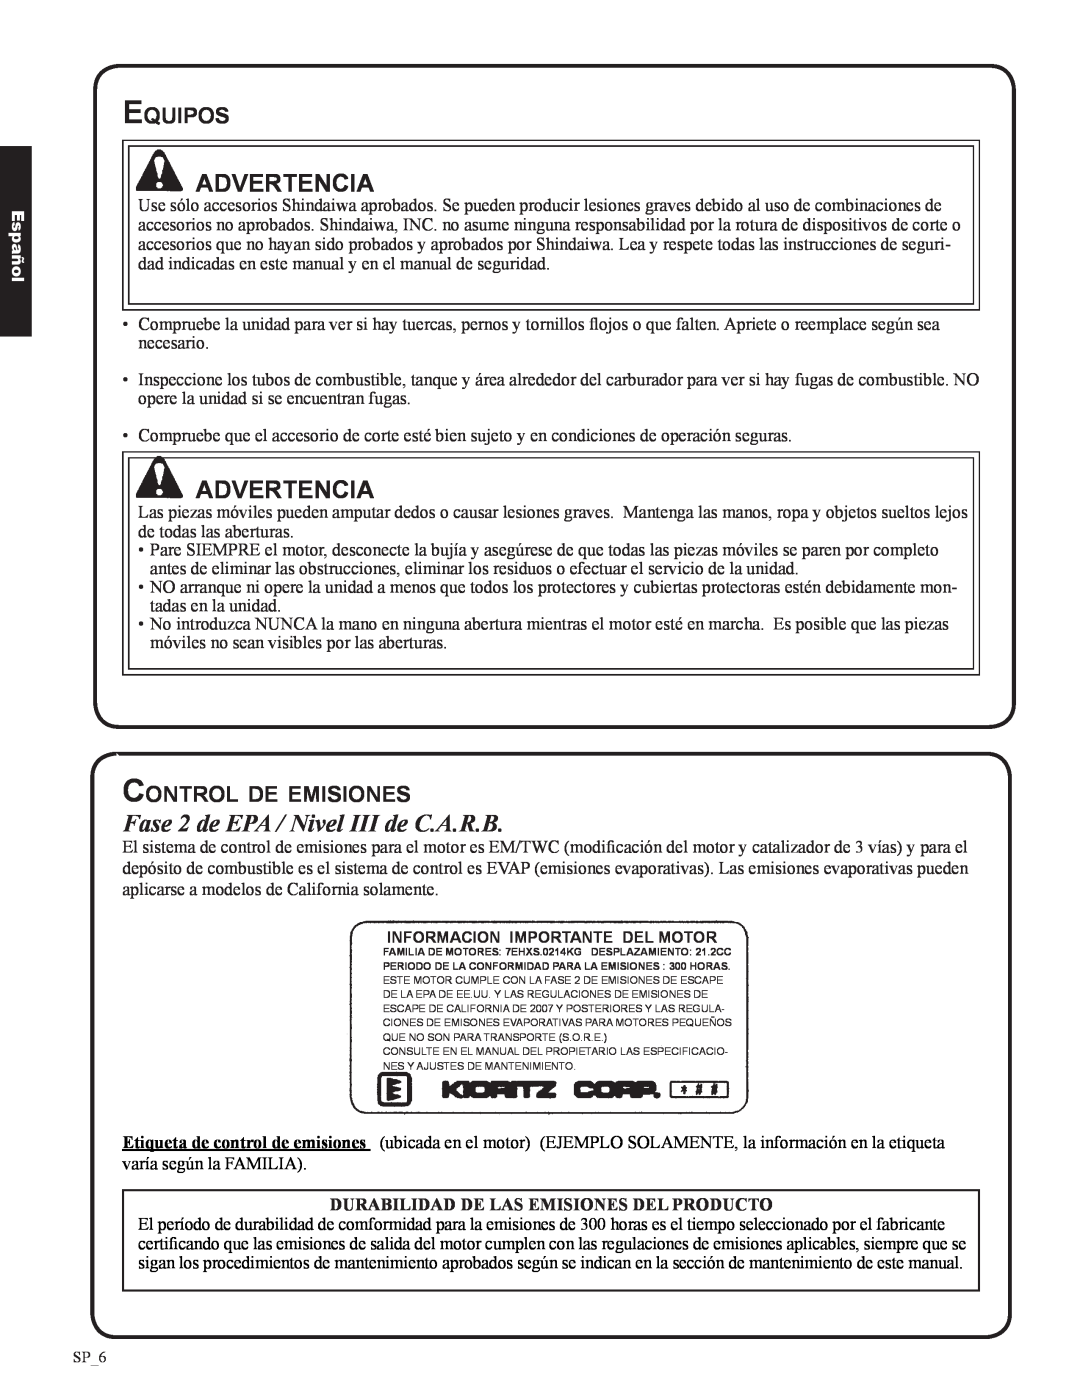 Shindaiwa DH212, 82053 manual Fase 2 de EPA / Nivel III de C.A.R.B, Equipos, Control de emisiones, Advertencia, Español 